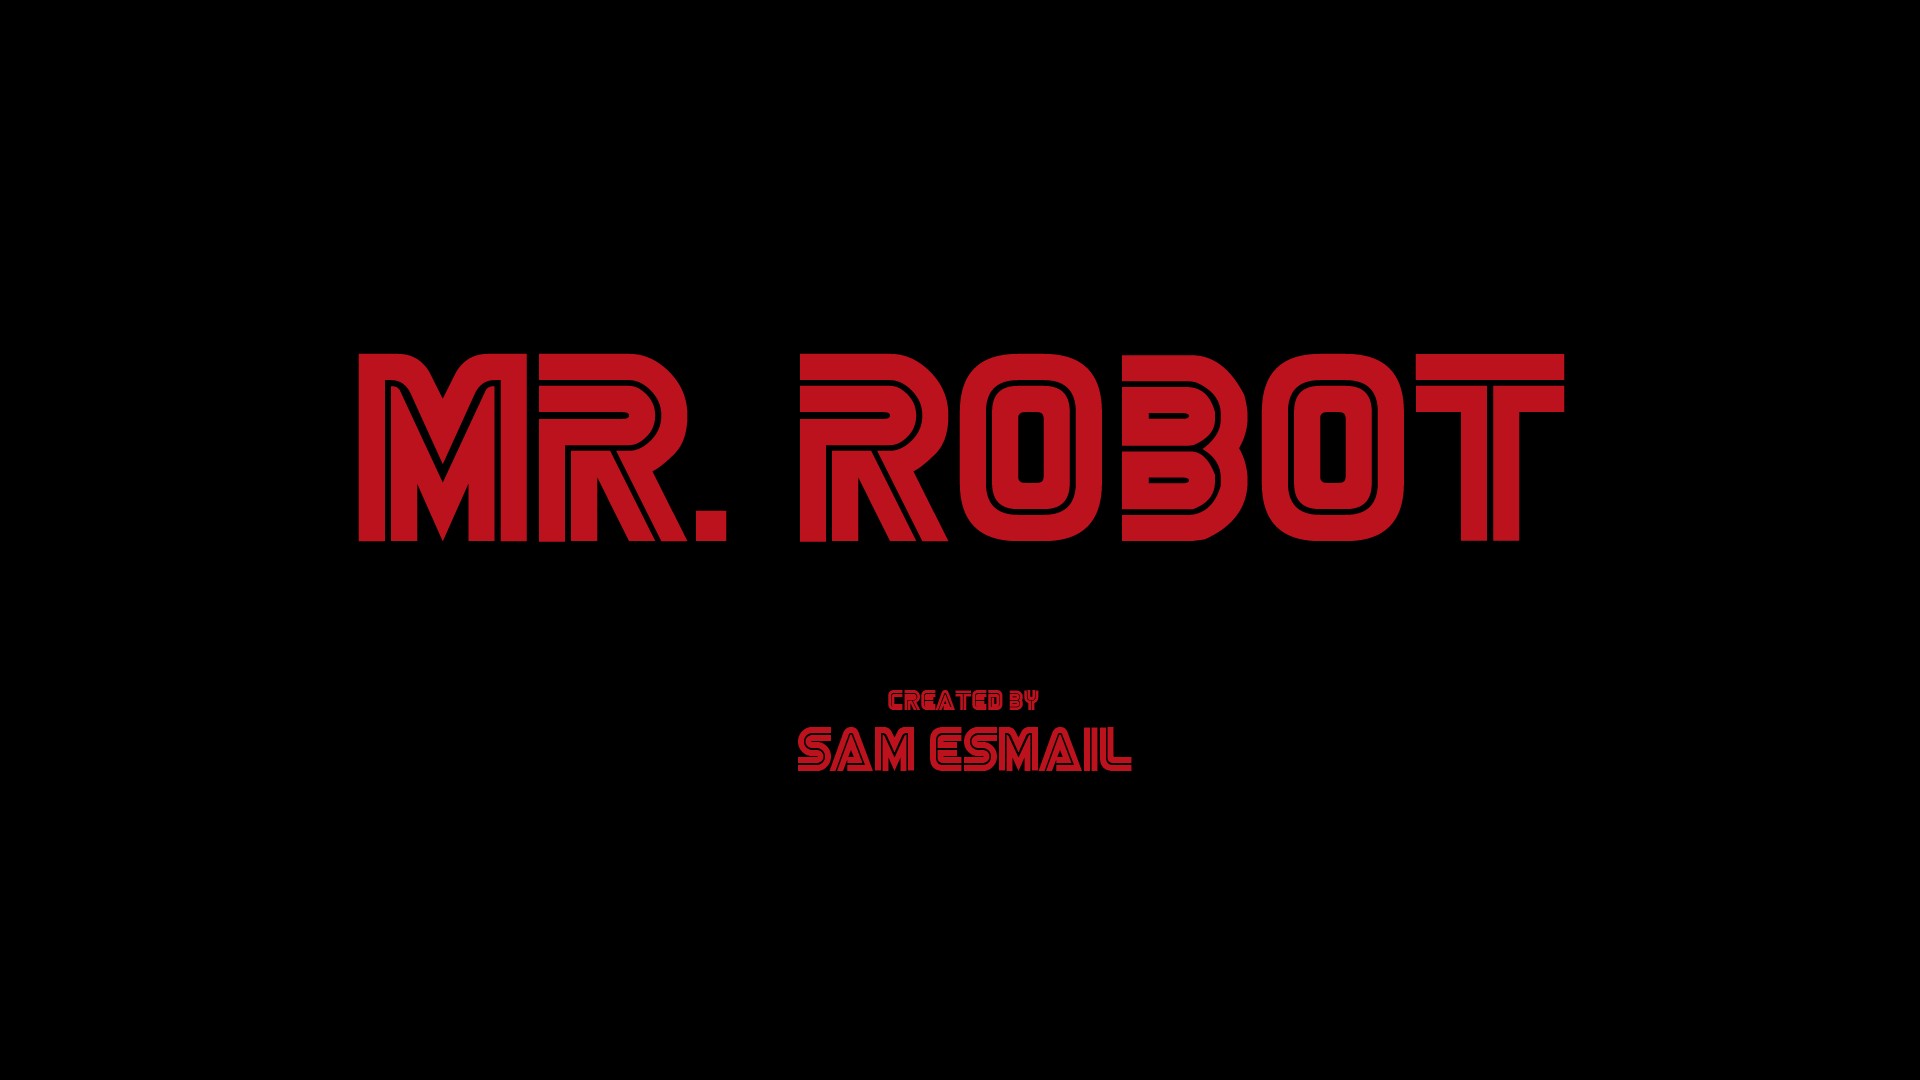 Mr. Robot, Title Wallpaper